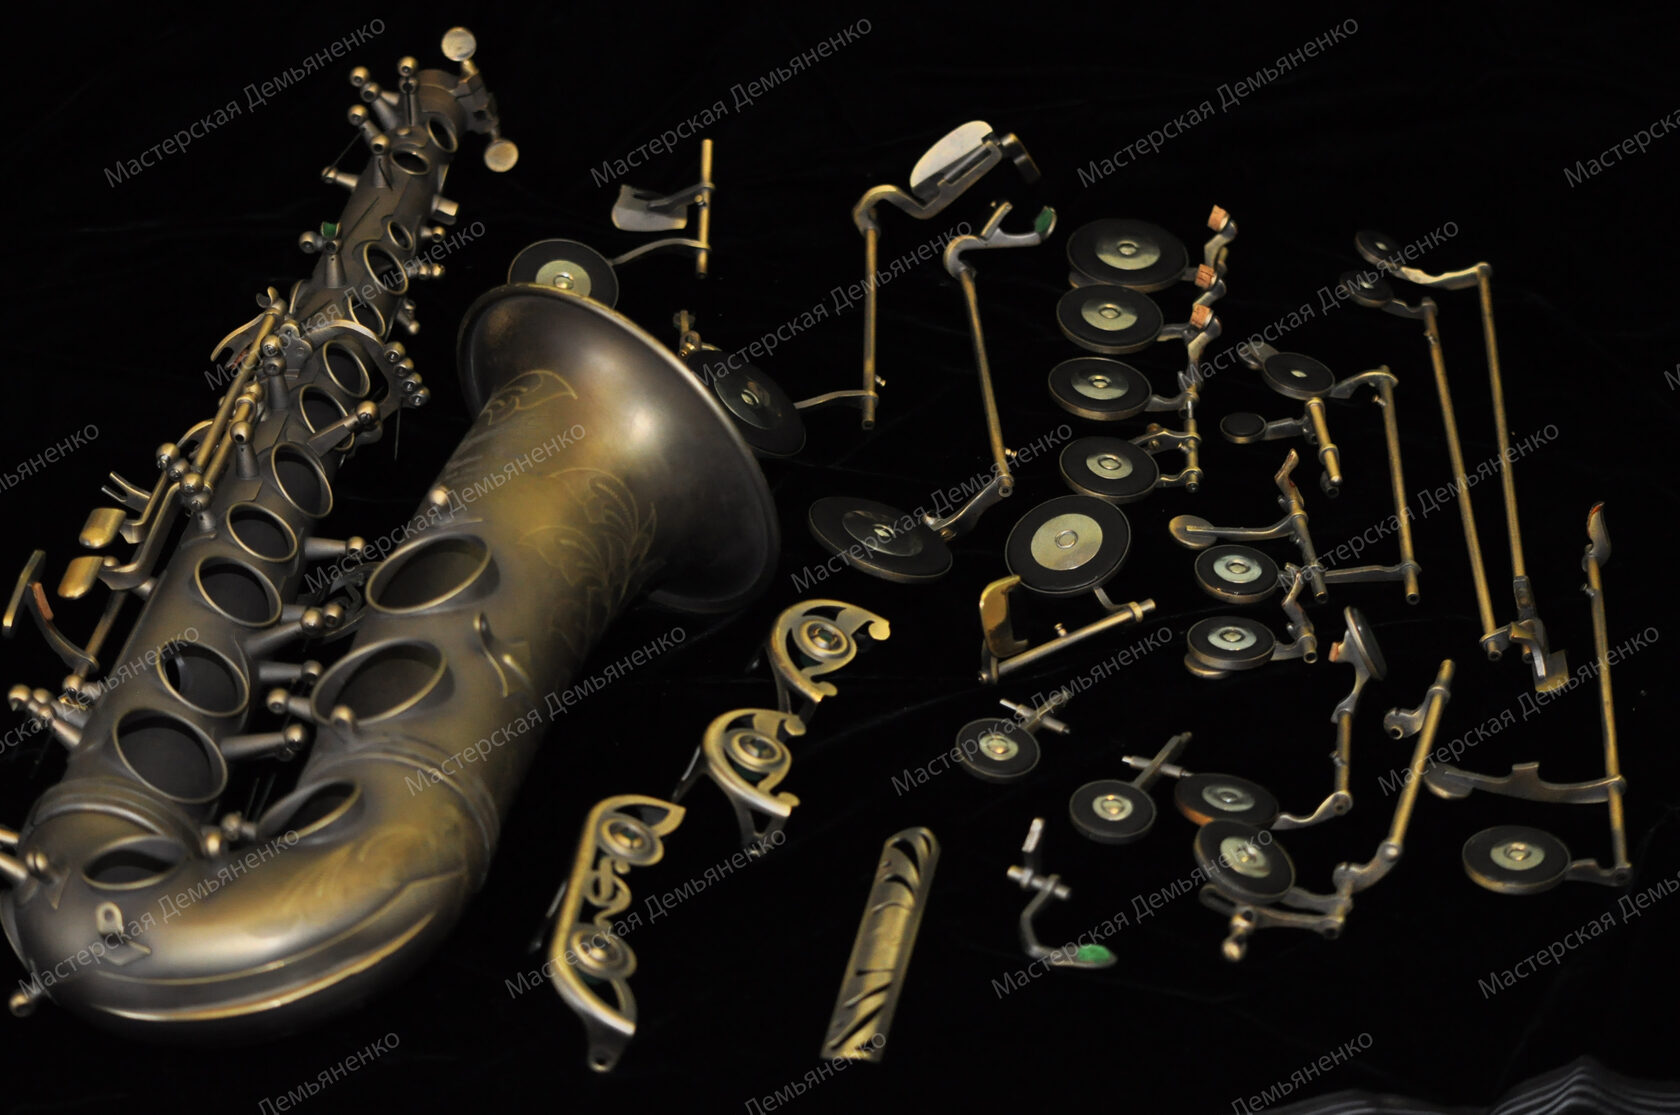 Музыка обработка саксофона. Мастерская саксофона. Инструменты для ремонта саксофона. Saxophon Unlacquered Custom class. Ремонт саксофонных подушечек для тенора.